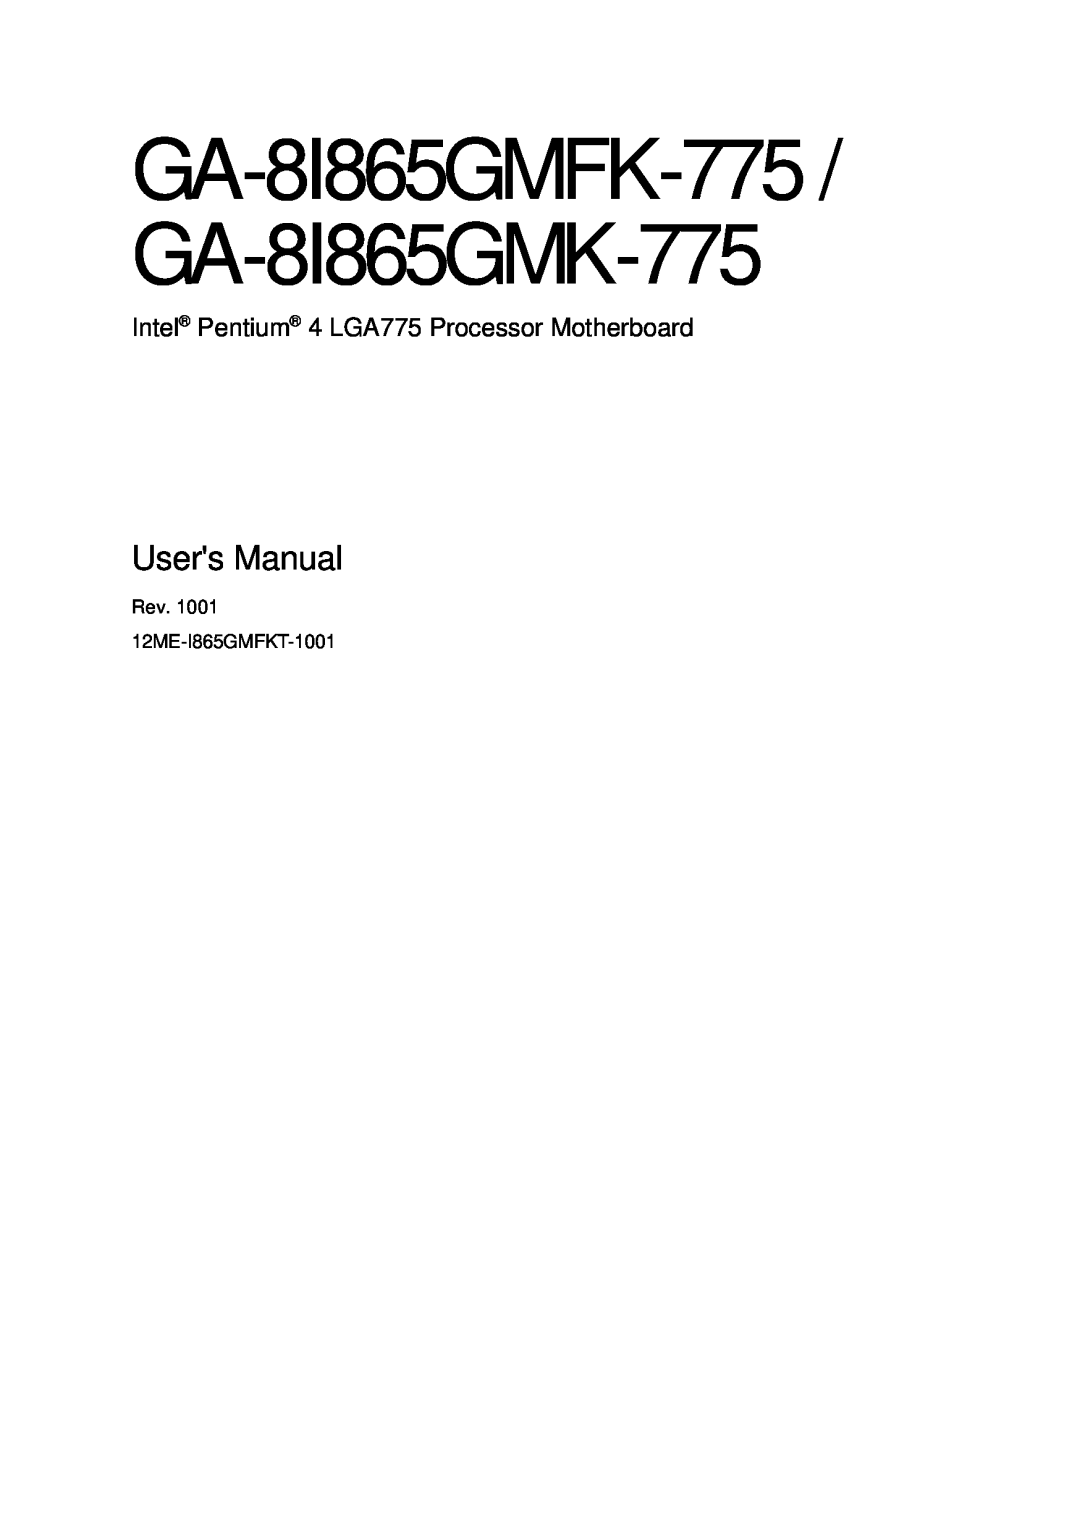 Gigabyte user manual GA-8I865GMFK-775 / GA-8I865GMK-775, Users Manual, Intel Pentium 4 LGA775 Processor Motherboard 